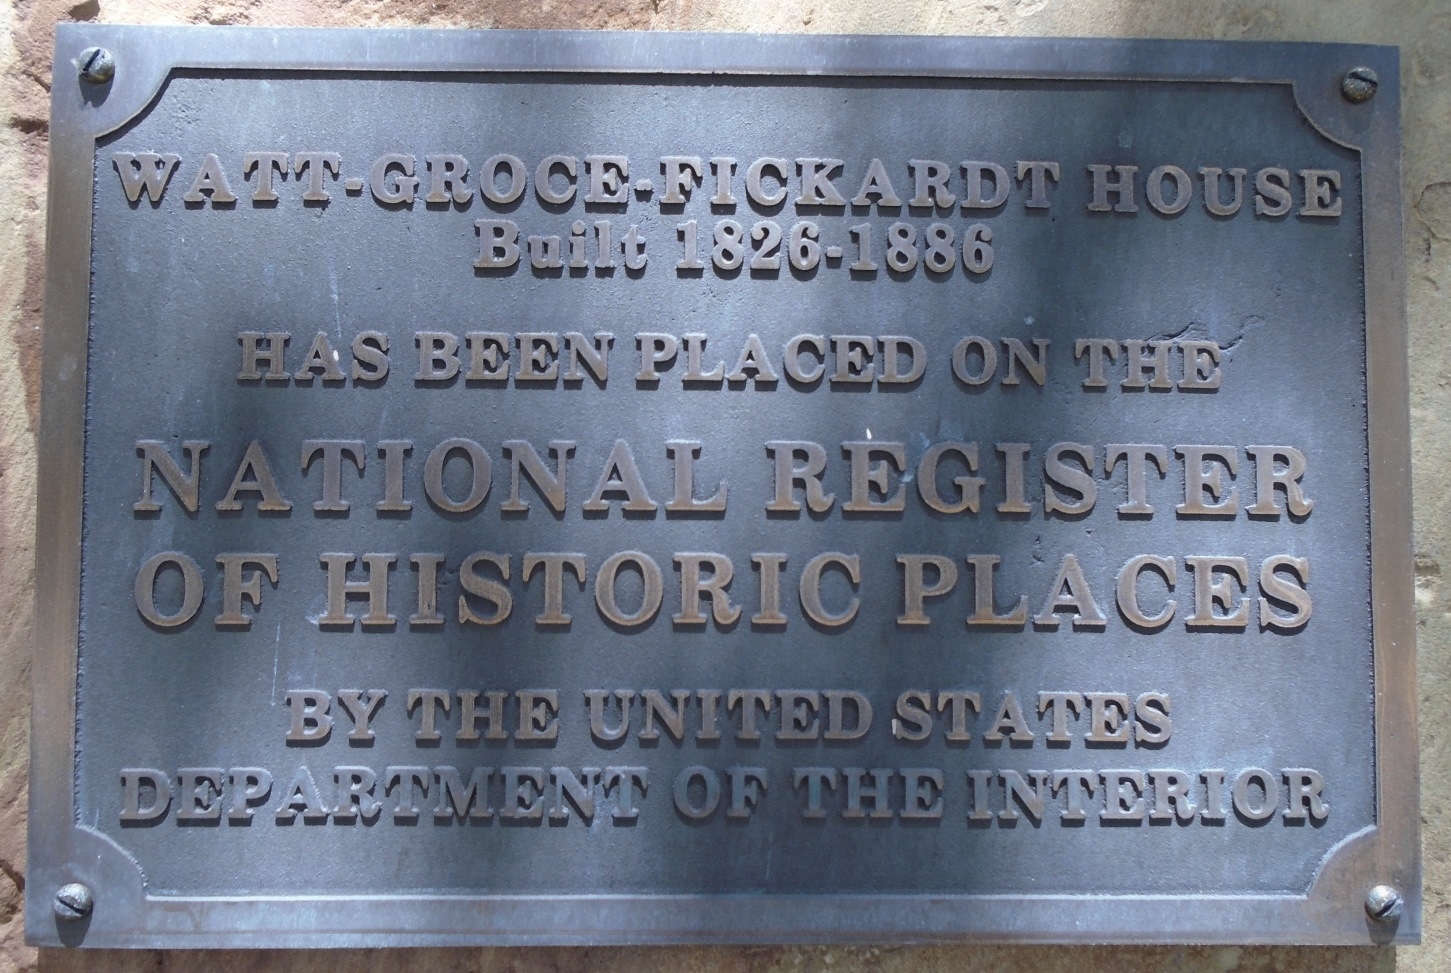 Watt-Groce-Fickardt House National Register Marker